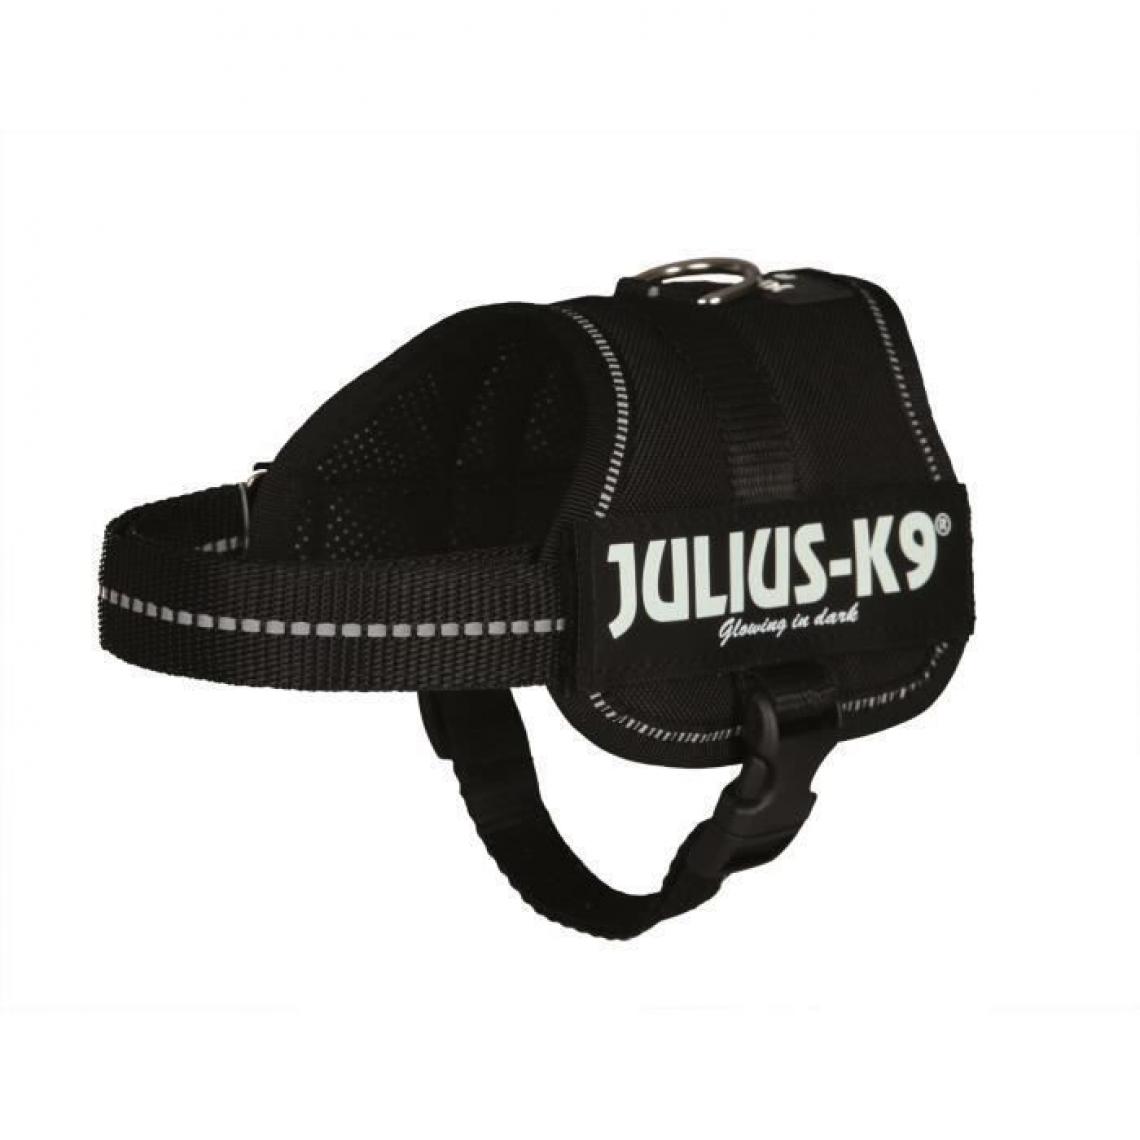 Julius K9 - Harnais Power Julius-K9 - Baby 2 - XS-S : 33-45 cm-18 mm - Noir - Pour chien - Collier pour chien